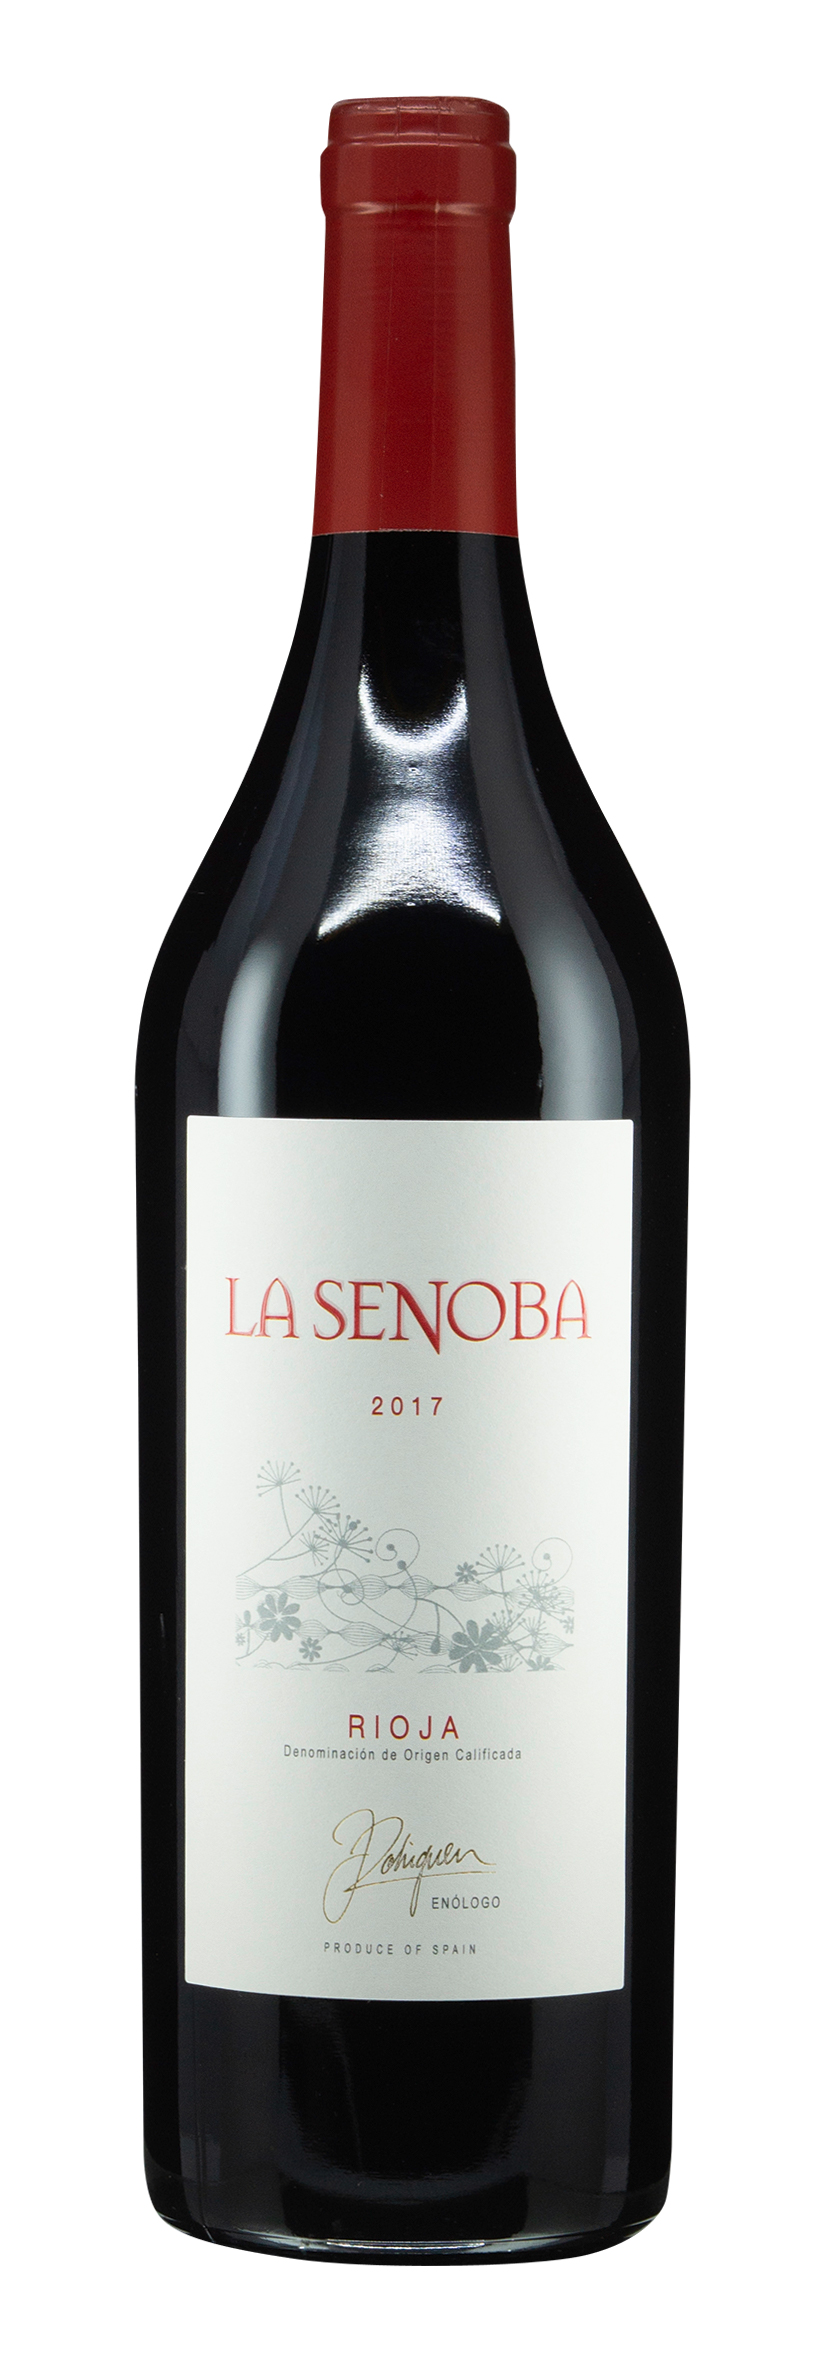 Rioja DOCa La Senoba 2017